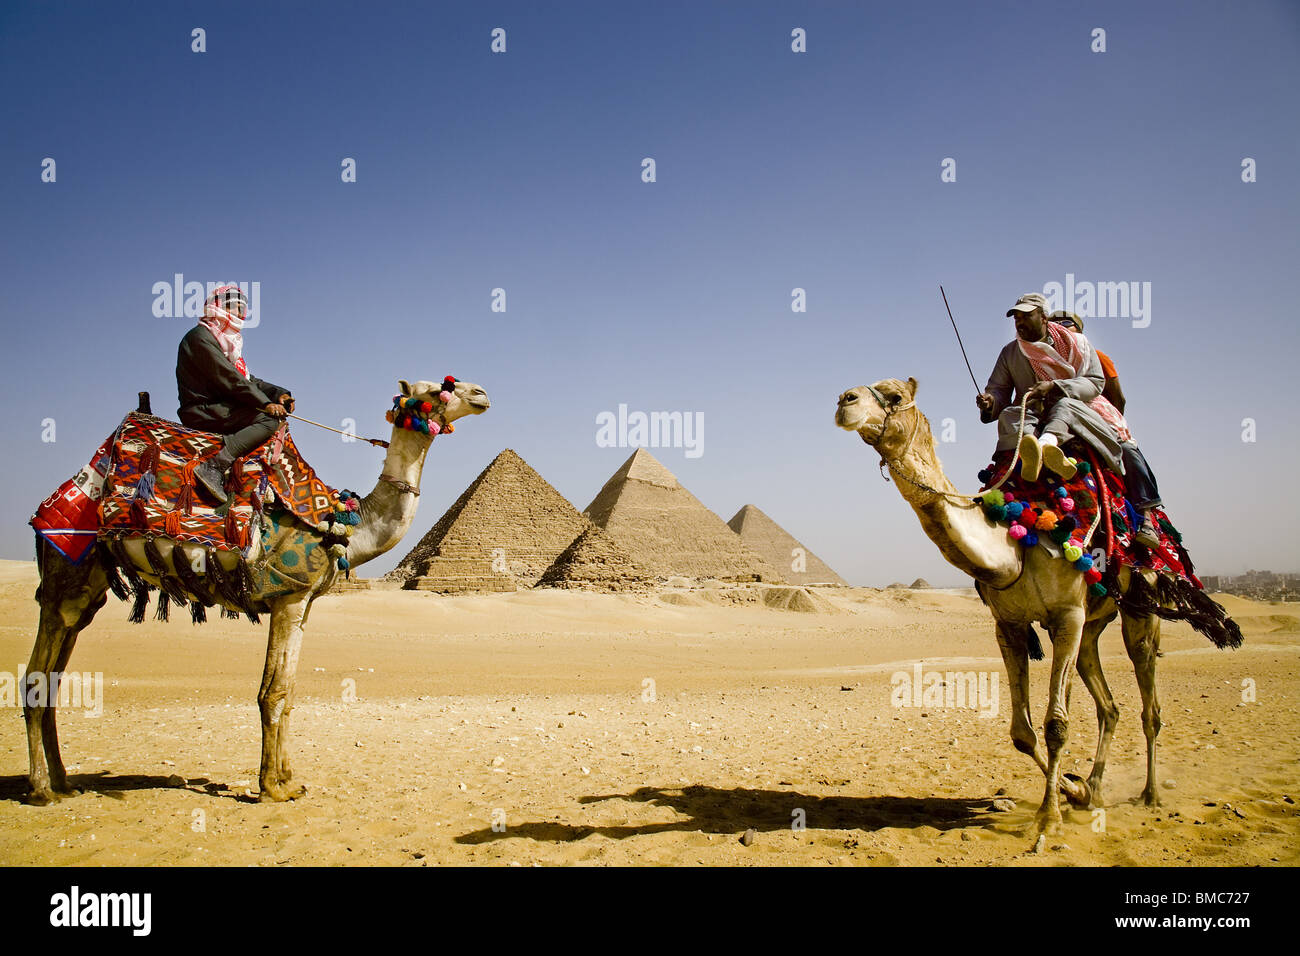 Los jinetes de camellos alquilar camellos para turistas alrededor de las pirámides de Gizeh. Egipto Foto de stock